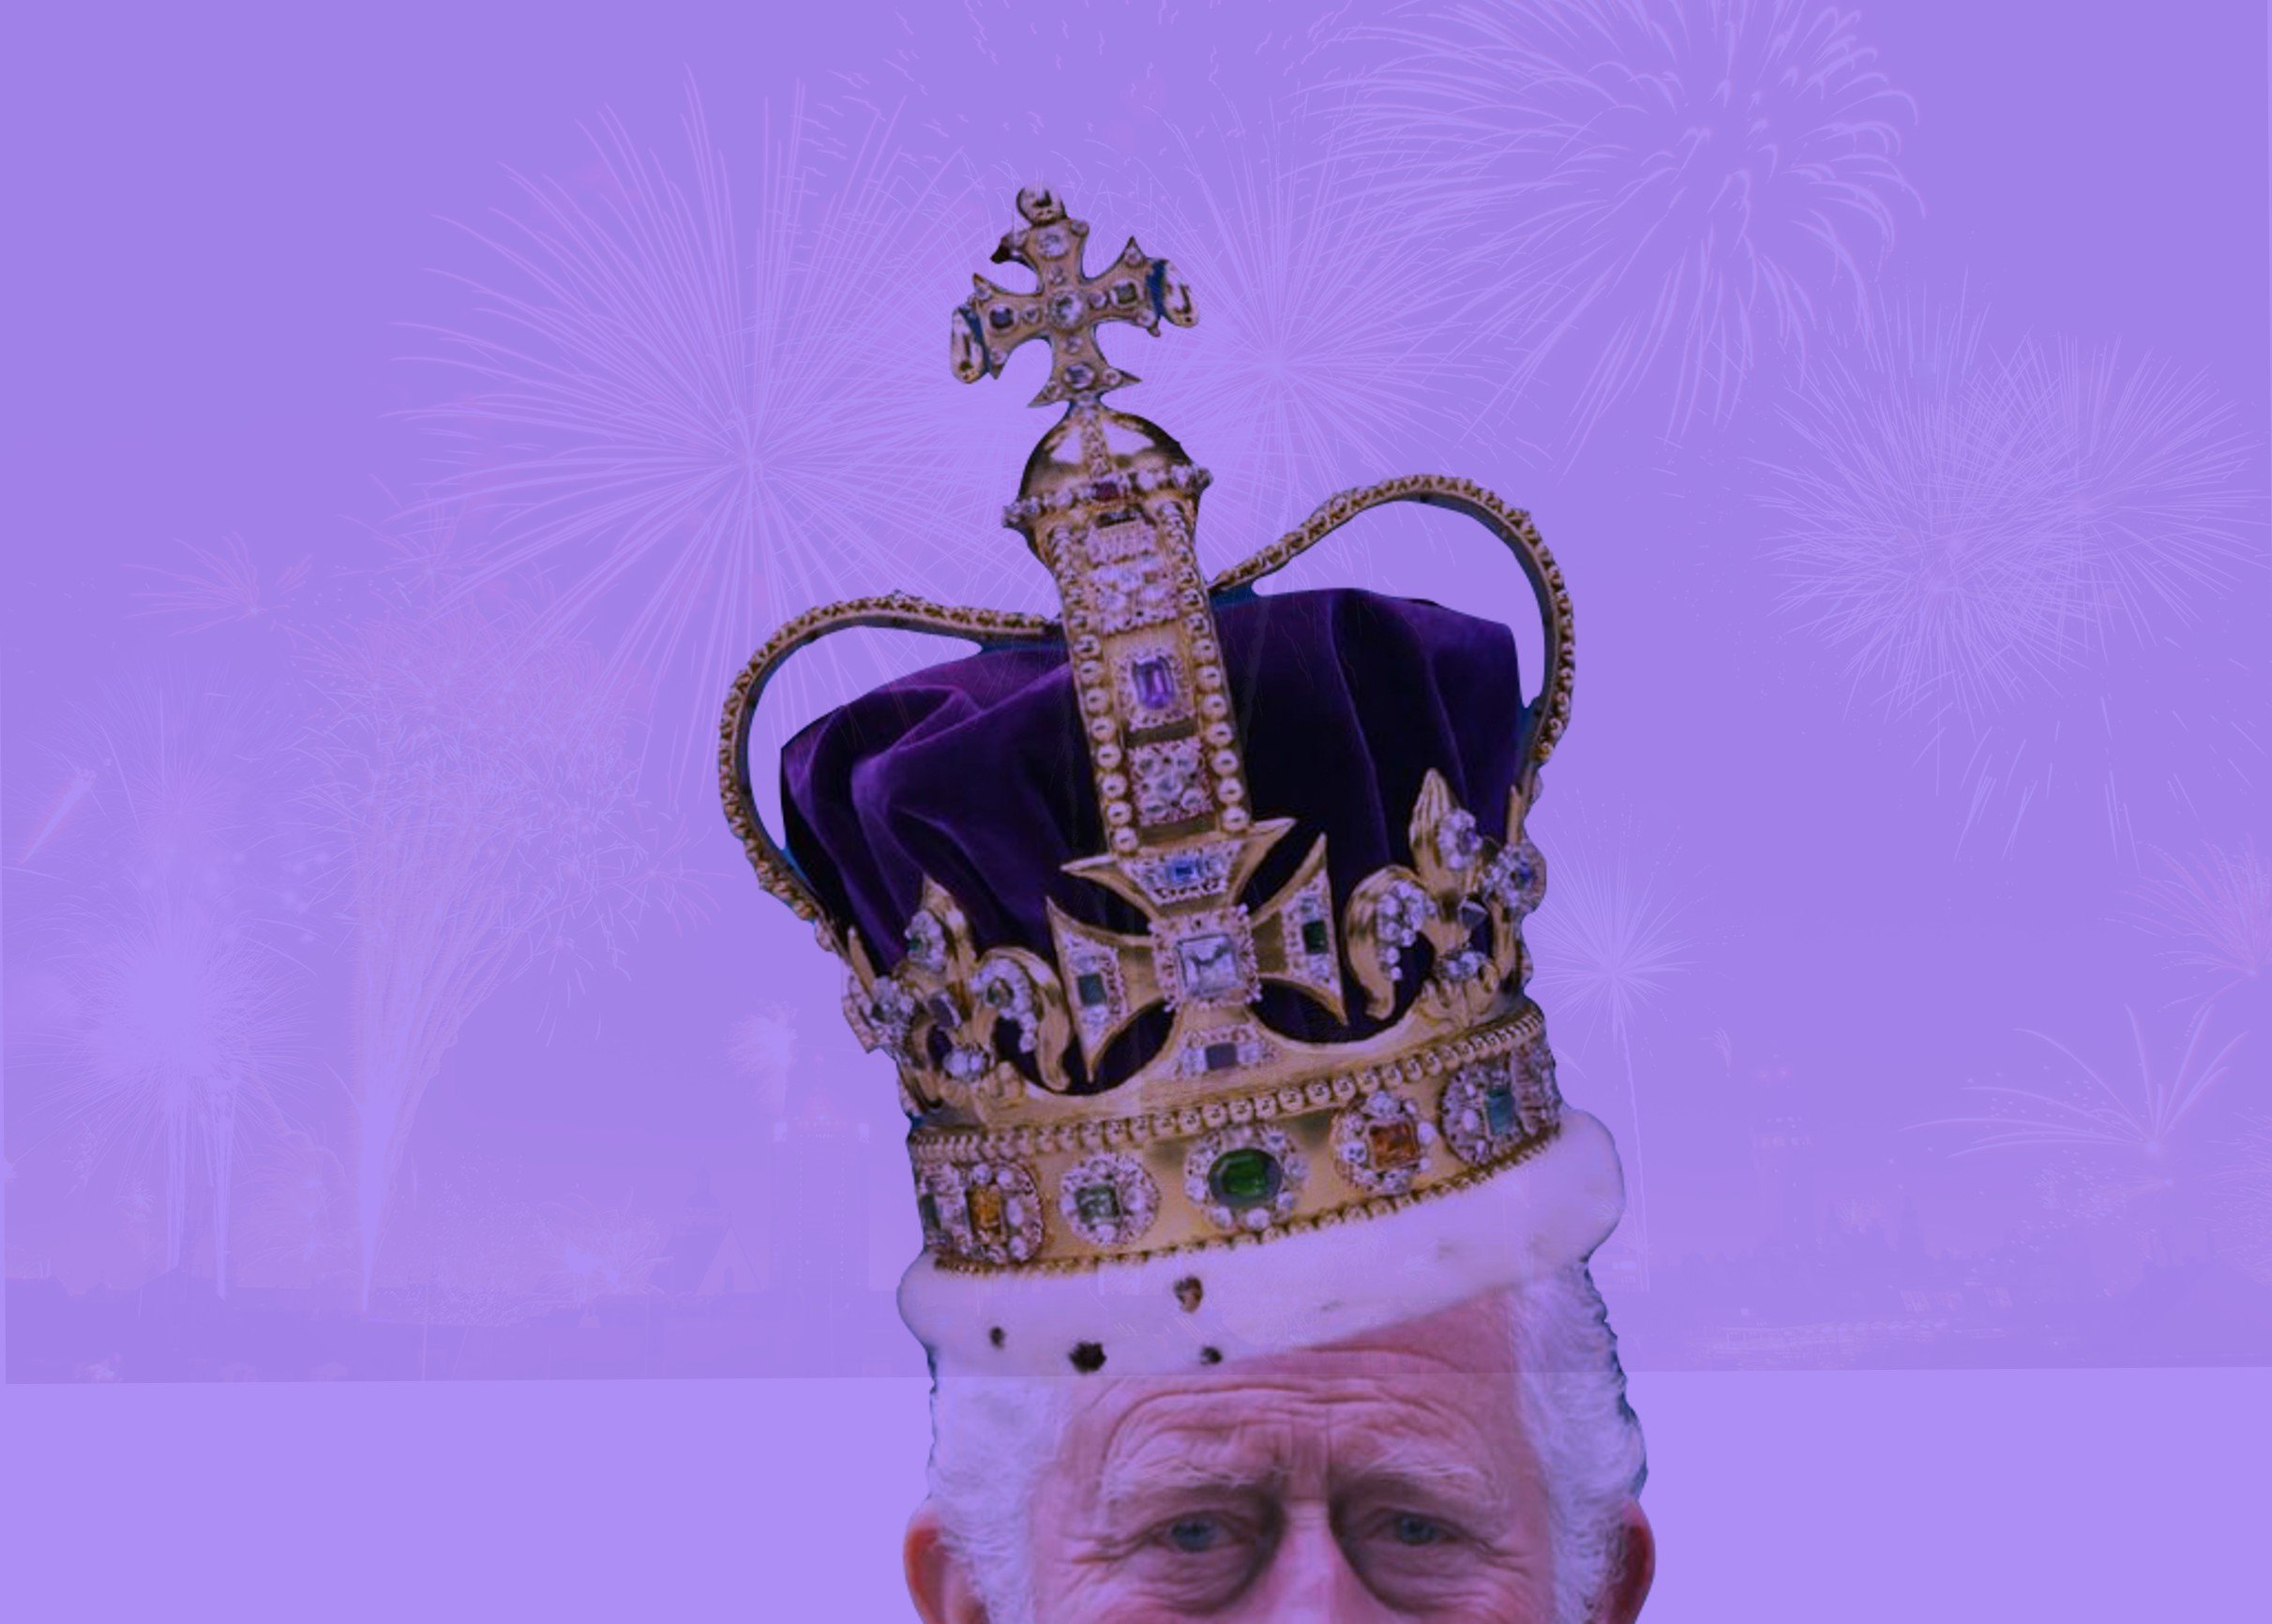 Portades de la coronació de Carles III: insípides i llagoteres